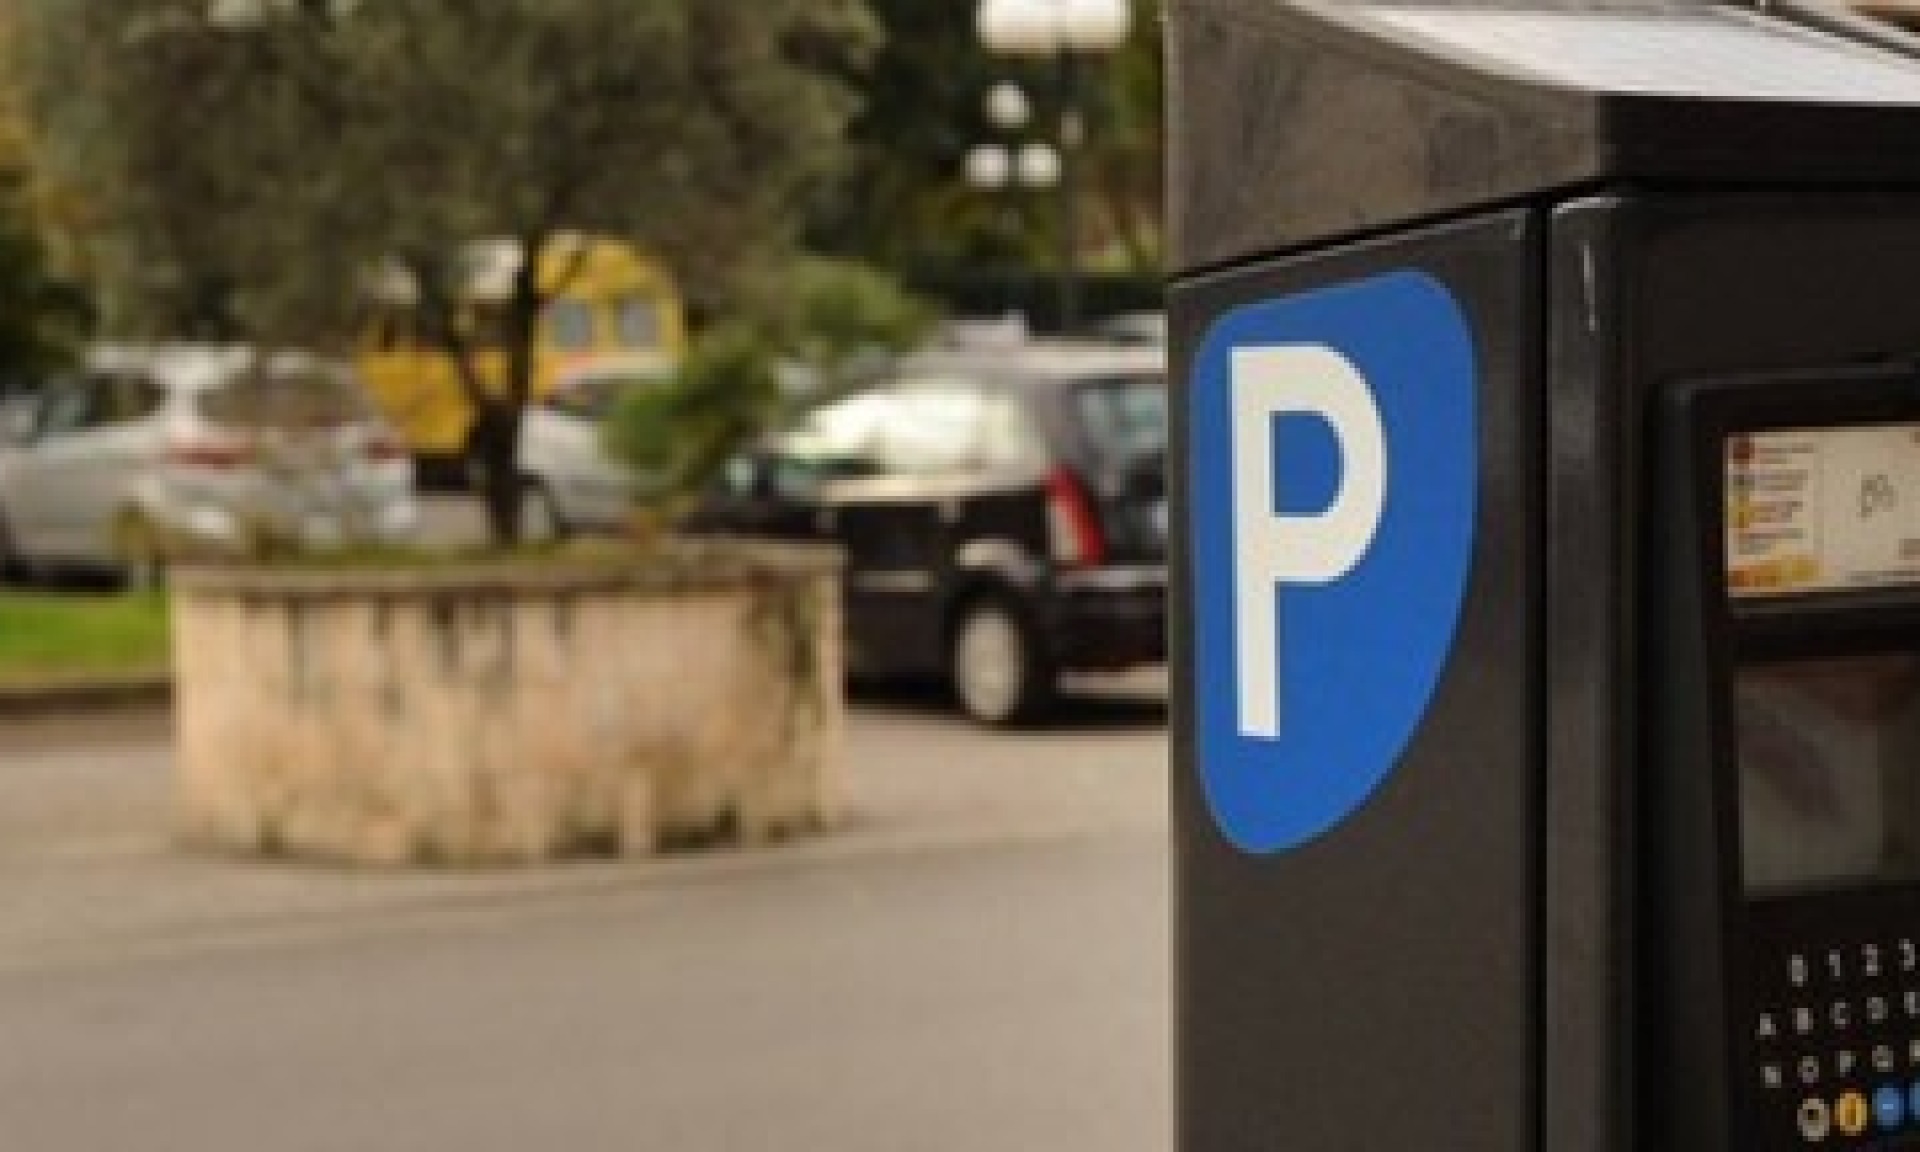 Gestione parcheggi comunali a pagamento